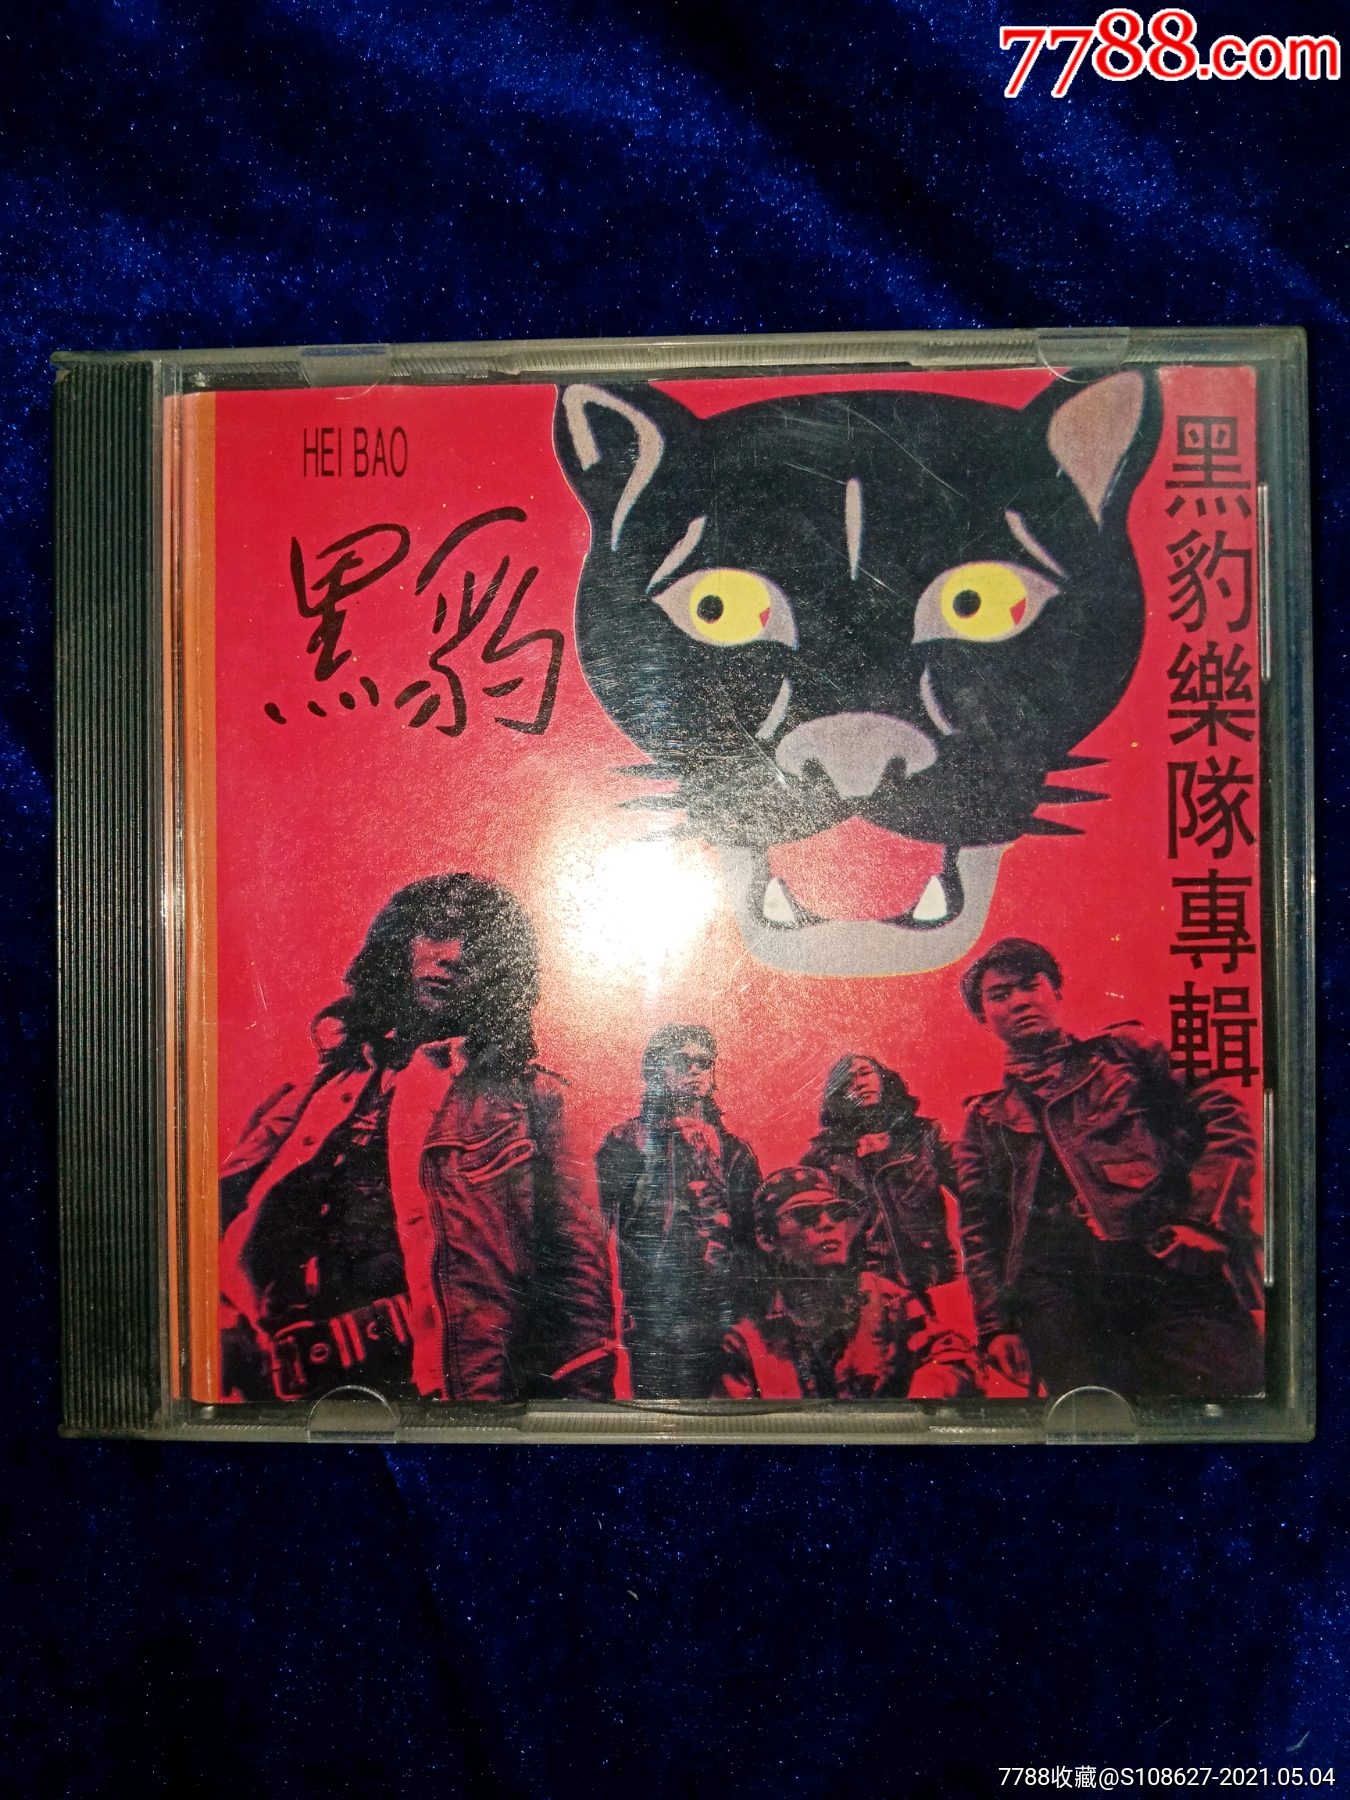 1994老版黑豹乐队专辑heibao黑豹乐队cd老版已拆